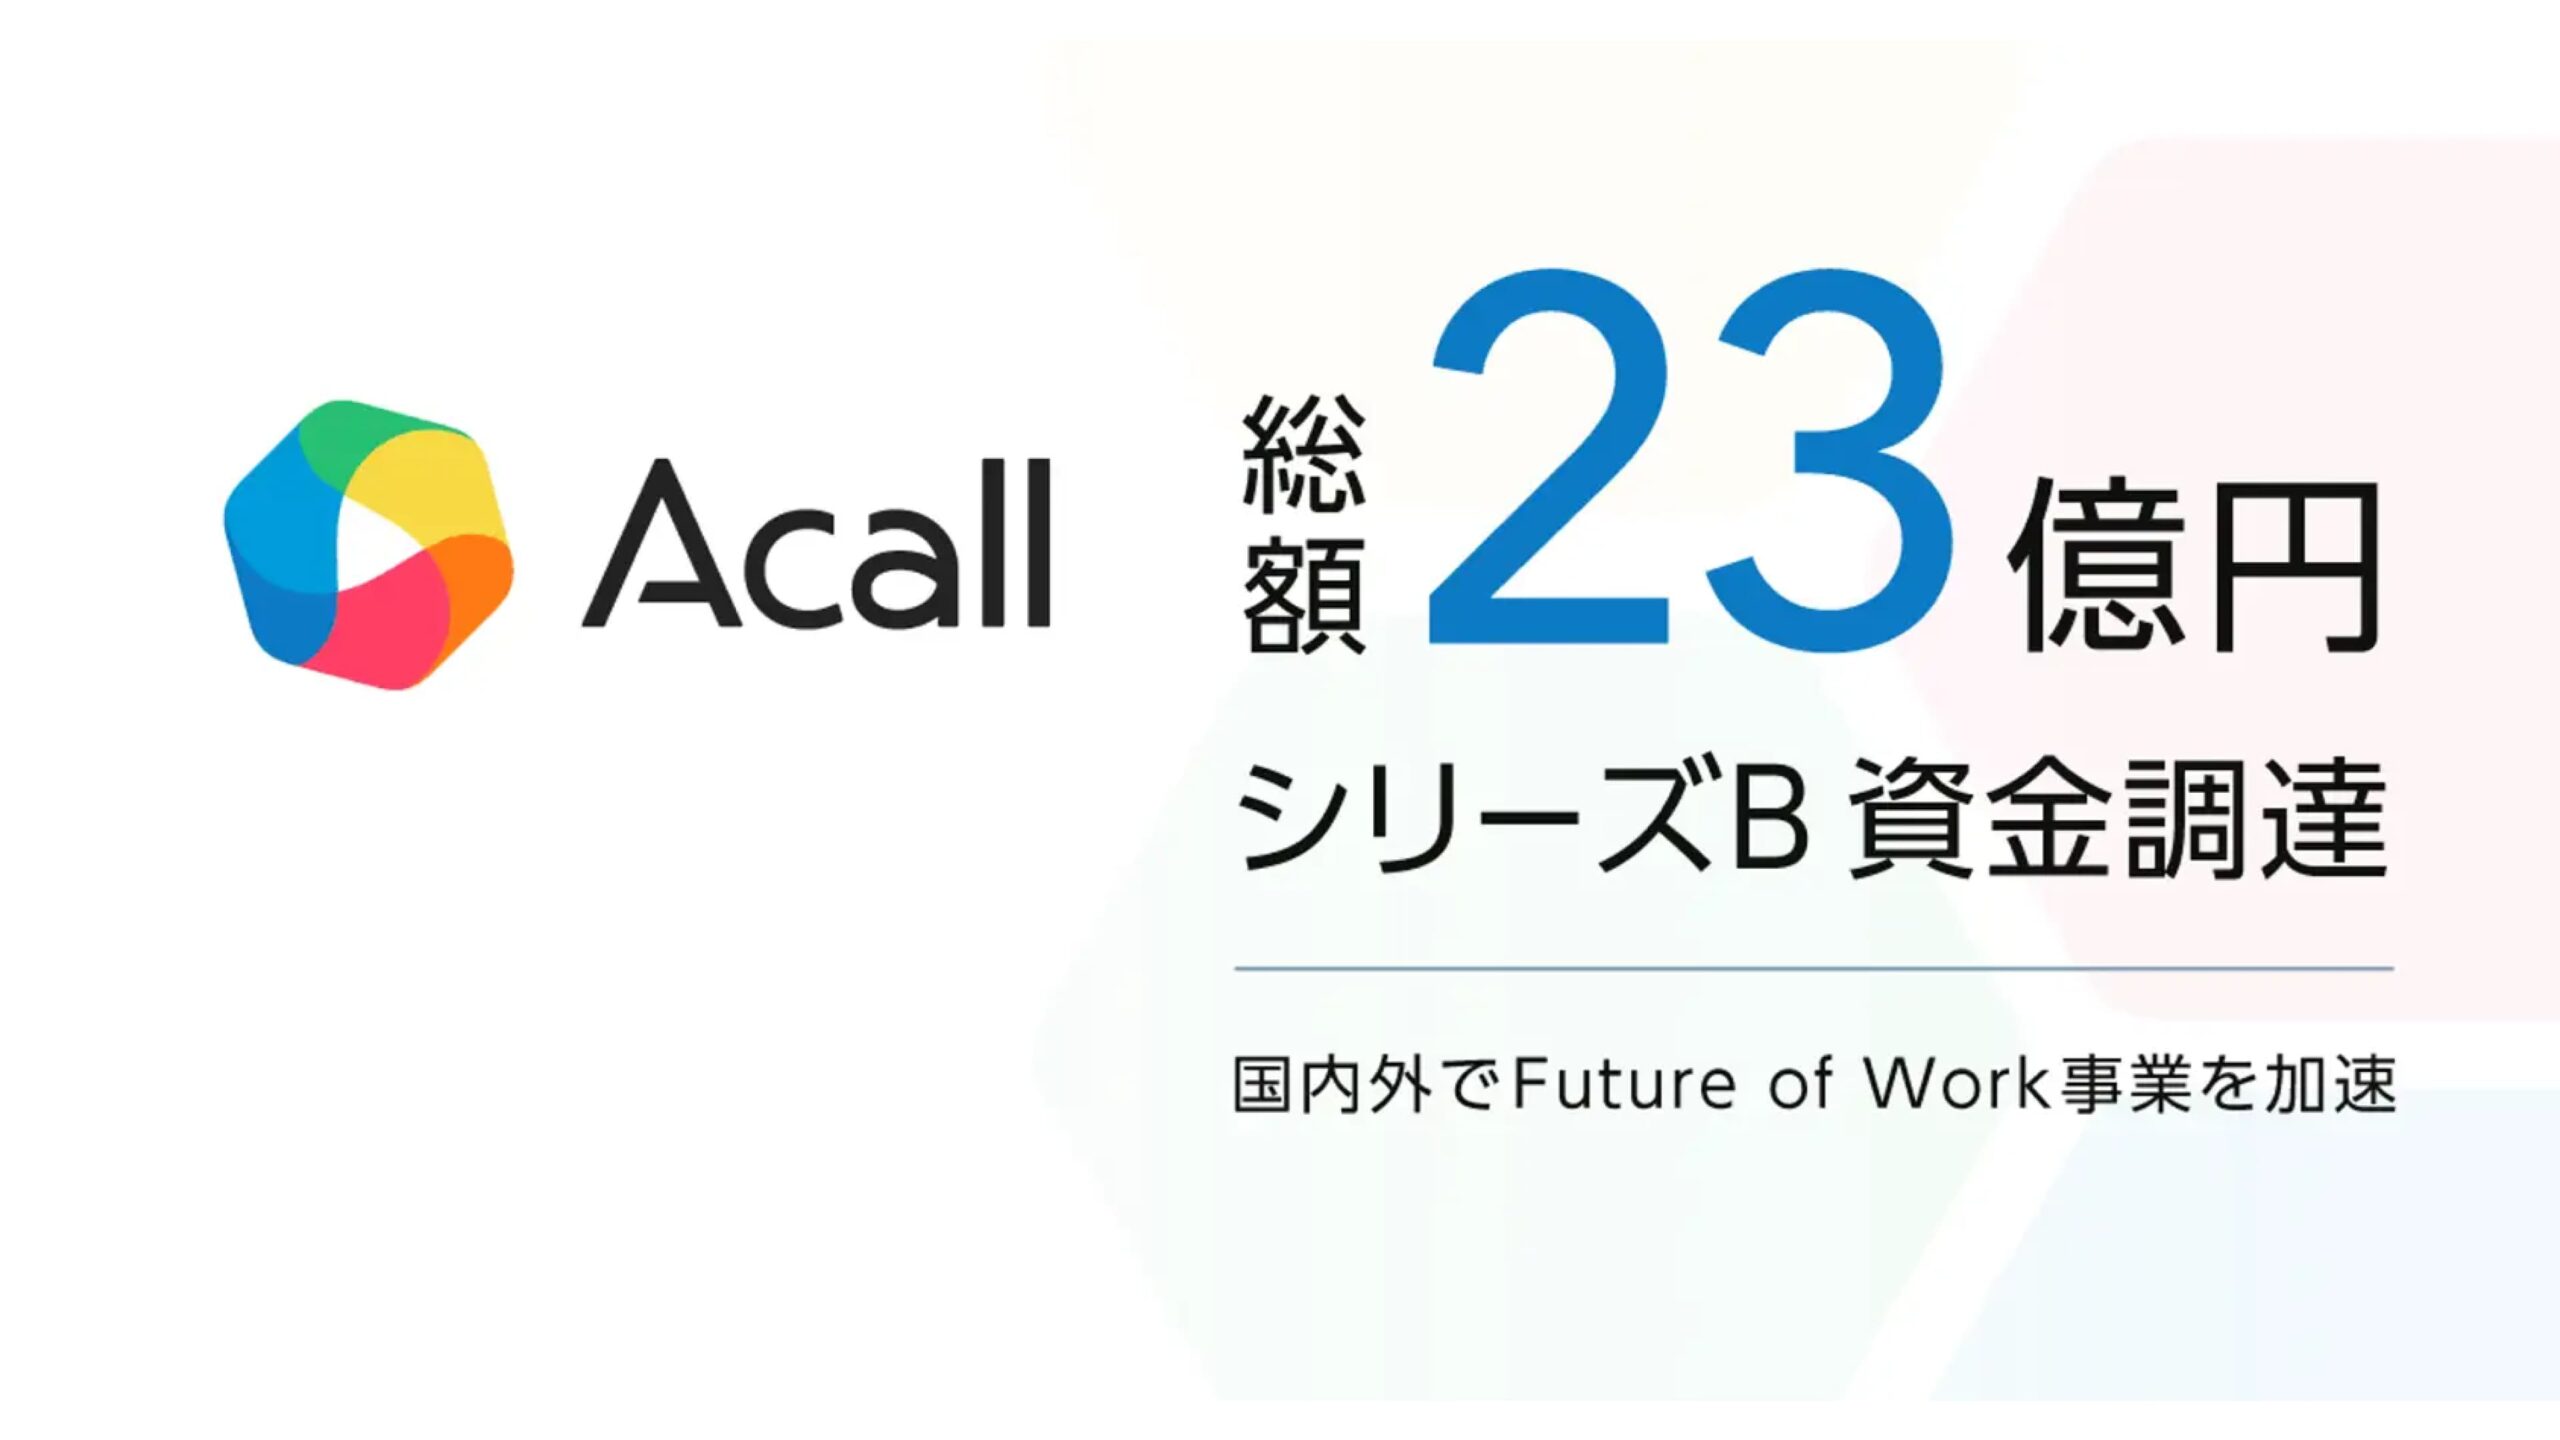 株式会社Acall、海外進出を加速するために大規模な資金調達を実施――調達総額は23億円へ